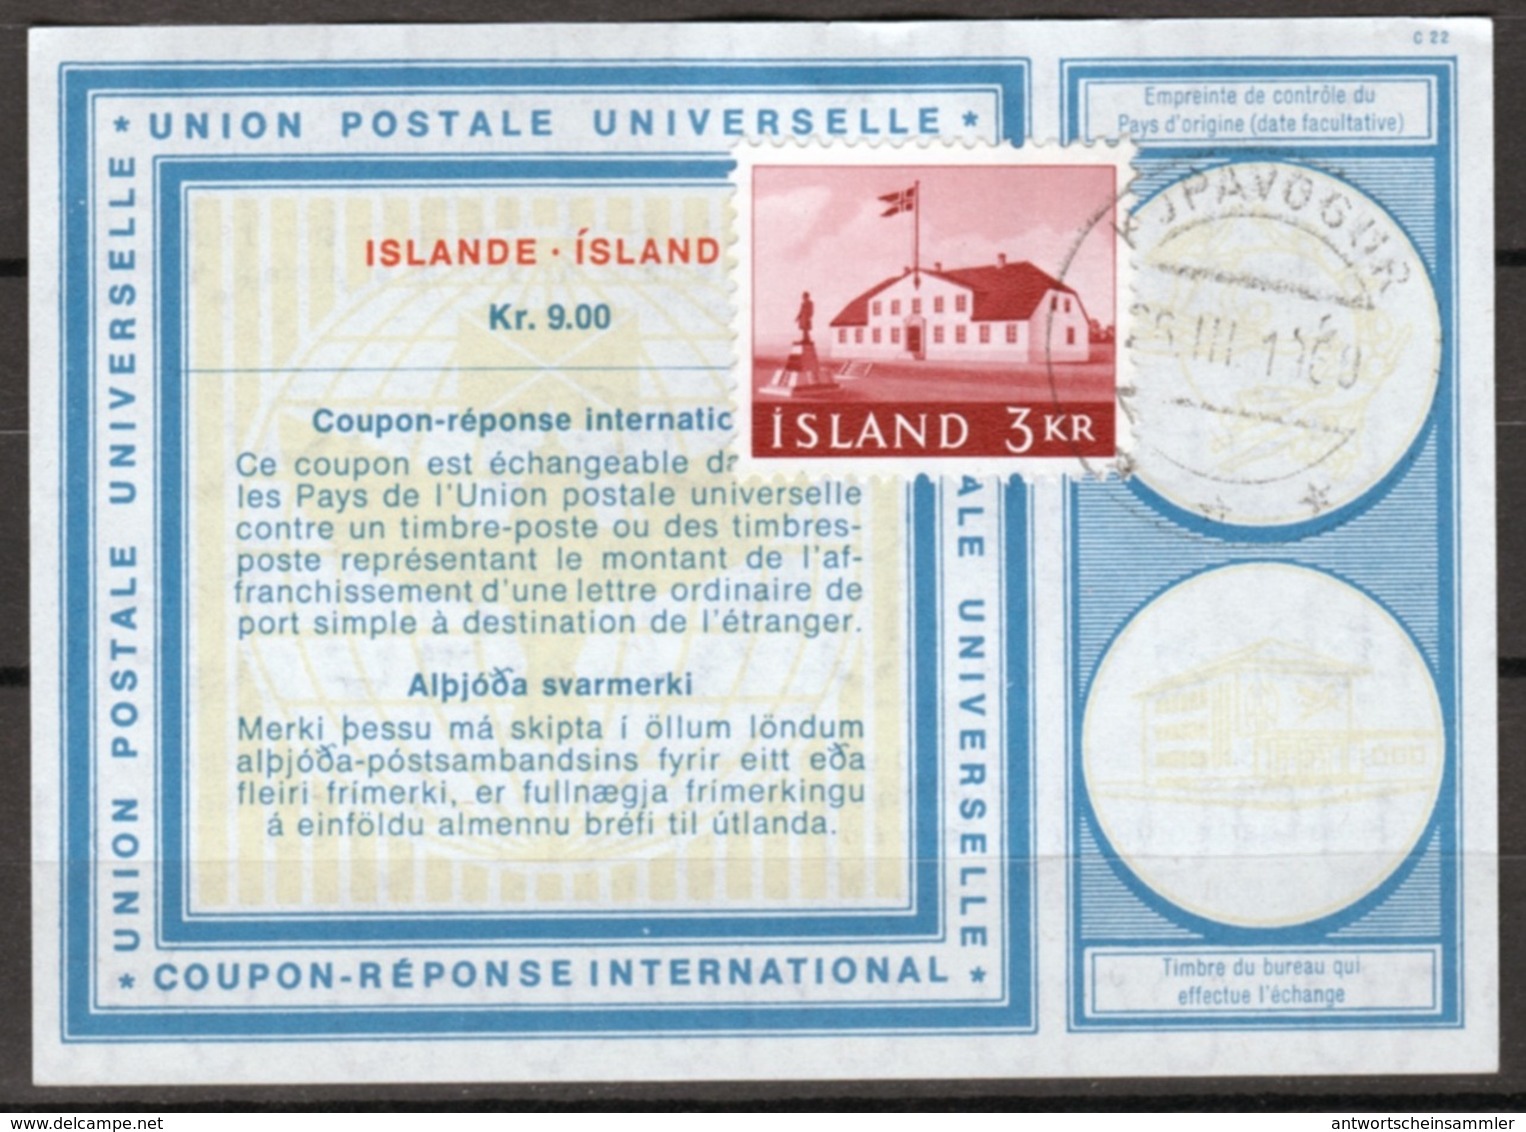 ISLANDE / ICELAND Vi19 Kr. 9.00 + Stamp 3 KR  International Reply Coupon Reponse Antwortschein IAS IRC KOPAVOGUR 26.3.69 - Entiers Postaux